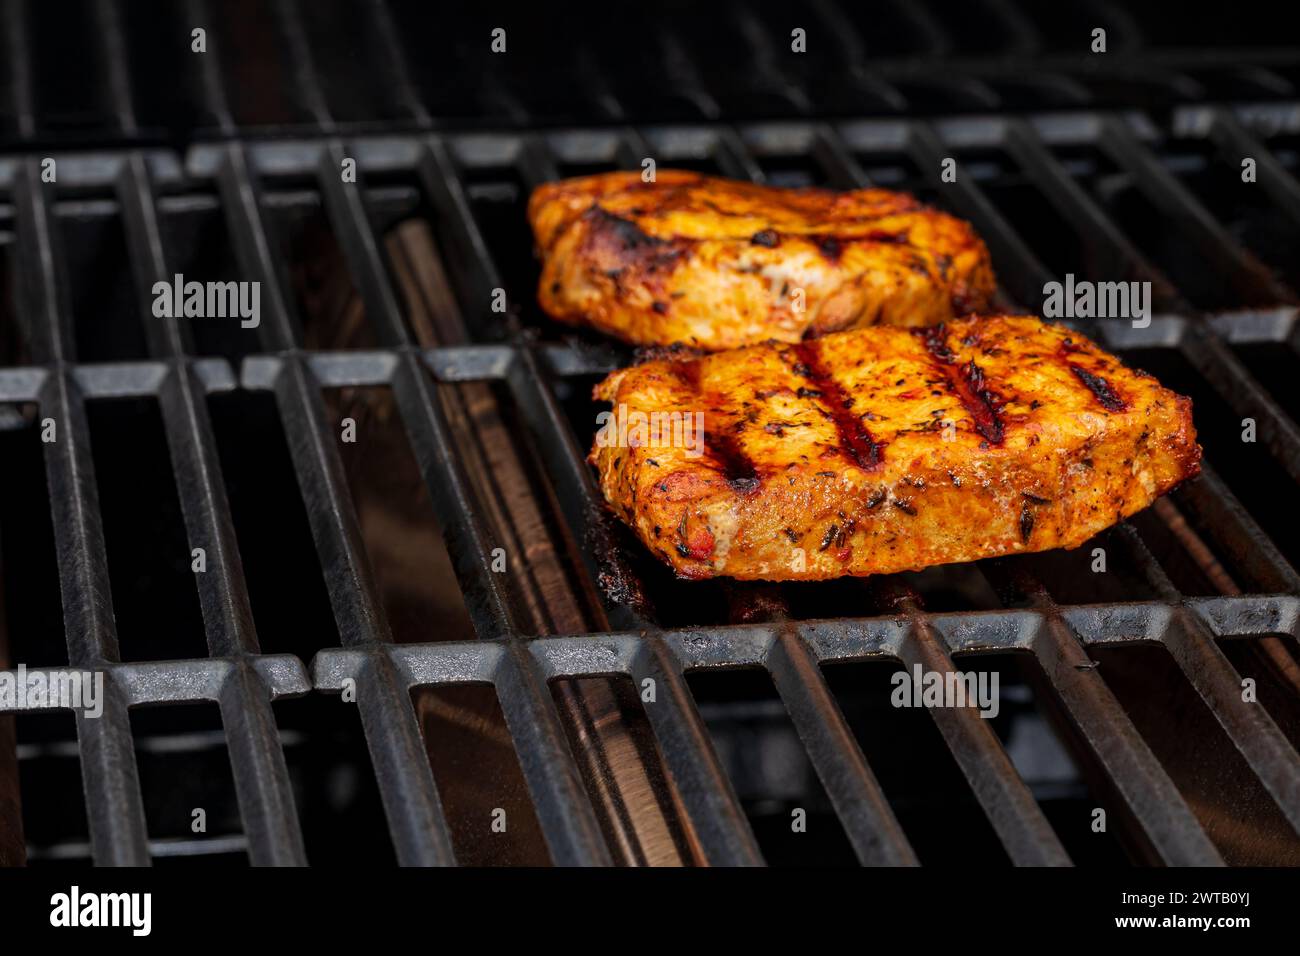 Braciole di maiale cucinate sulla griglia a gas. Barbecue all'aperto, sicurezza alimentare e temperatura di cottura. Foto Stock